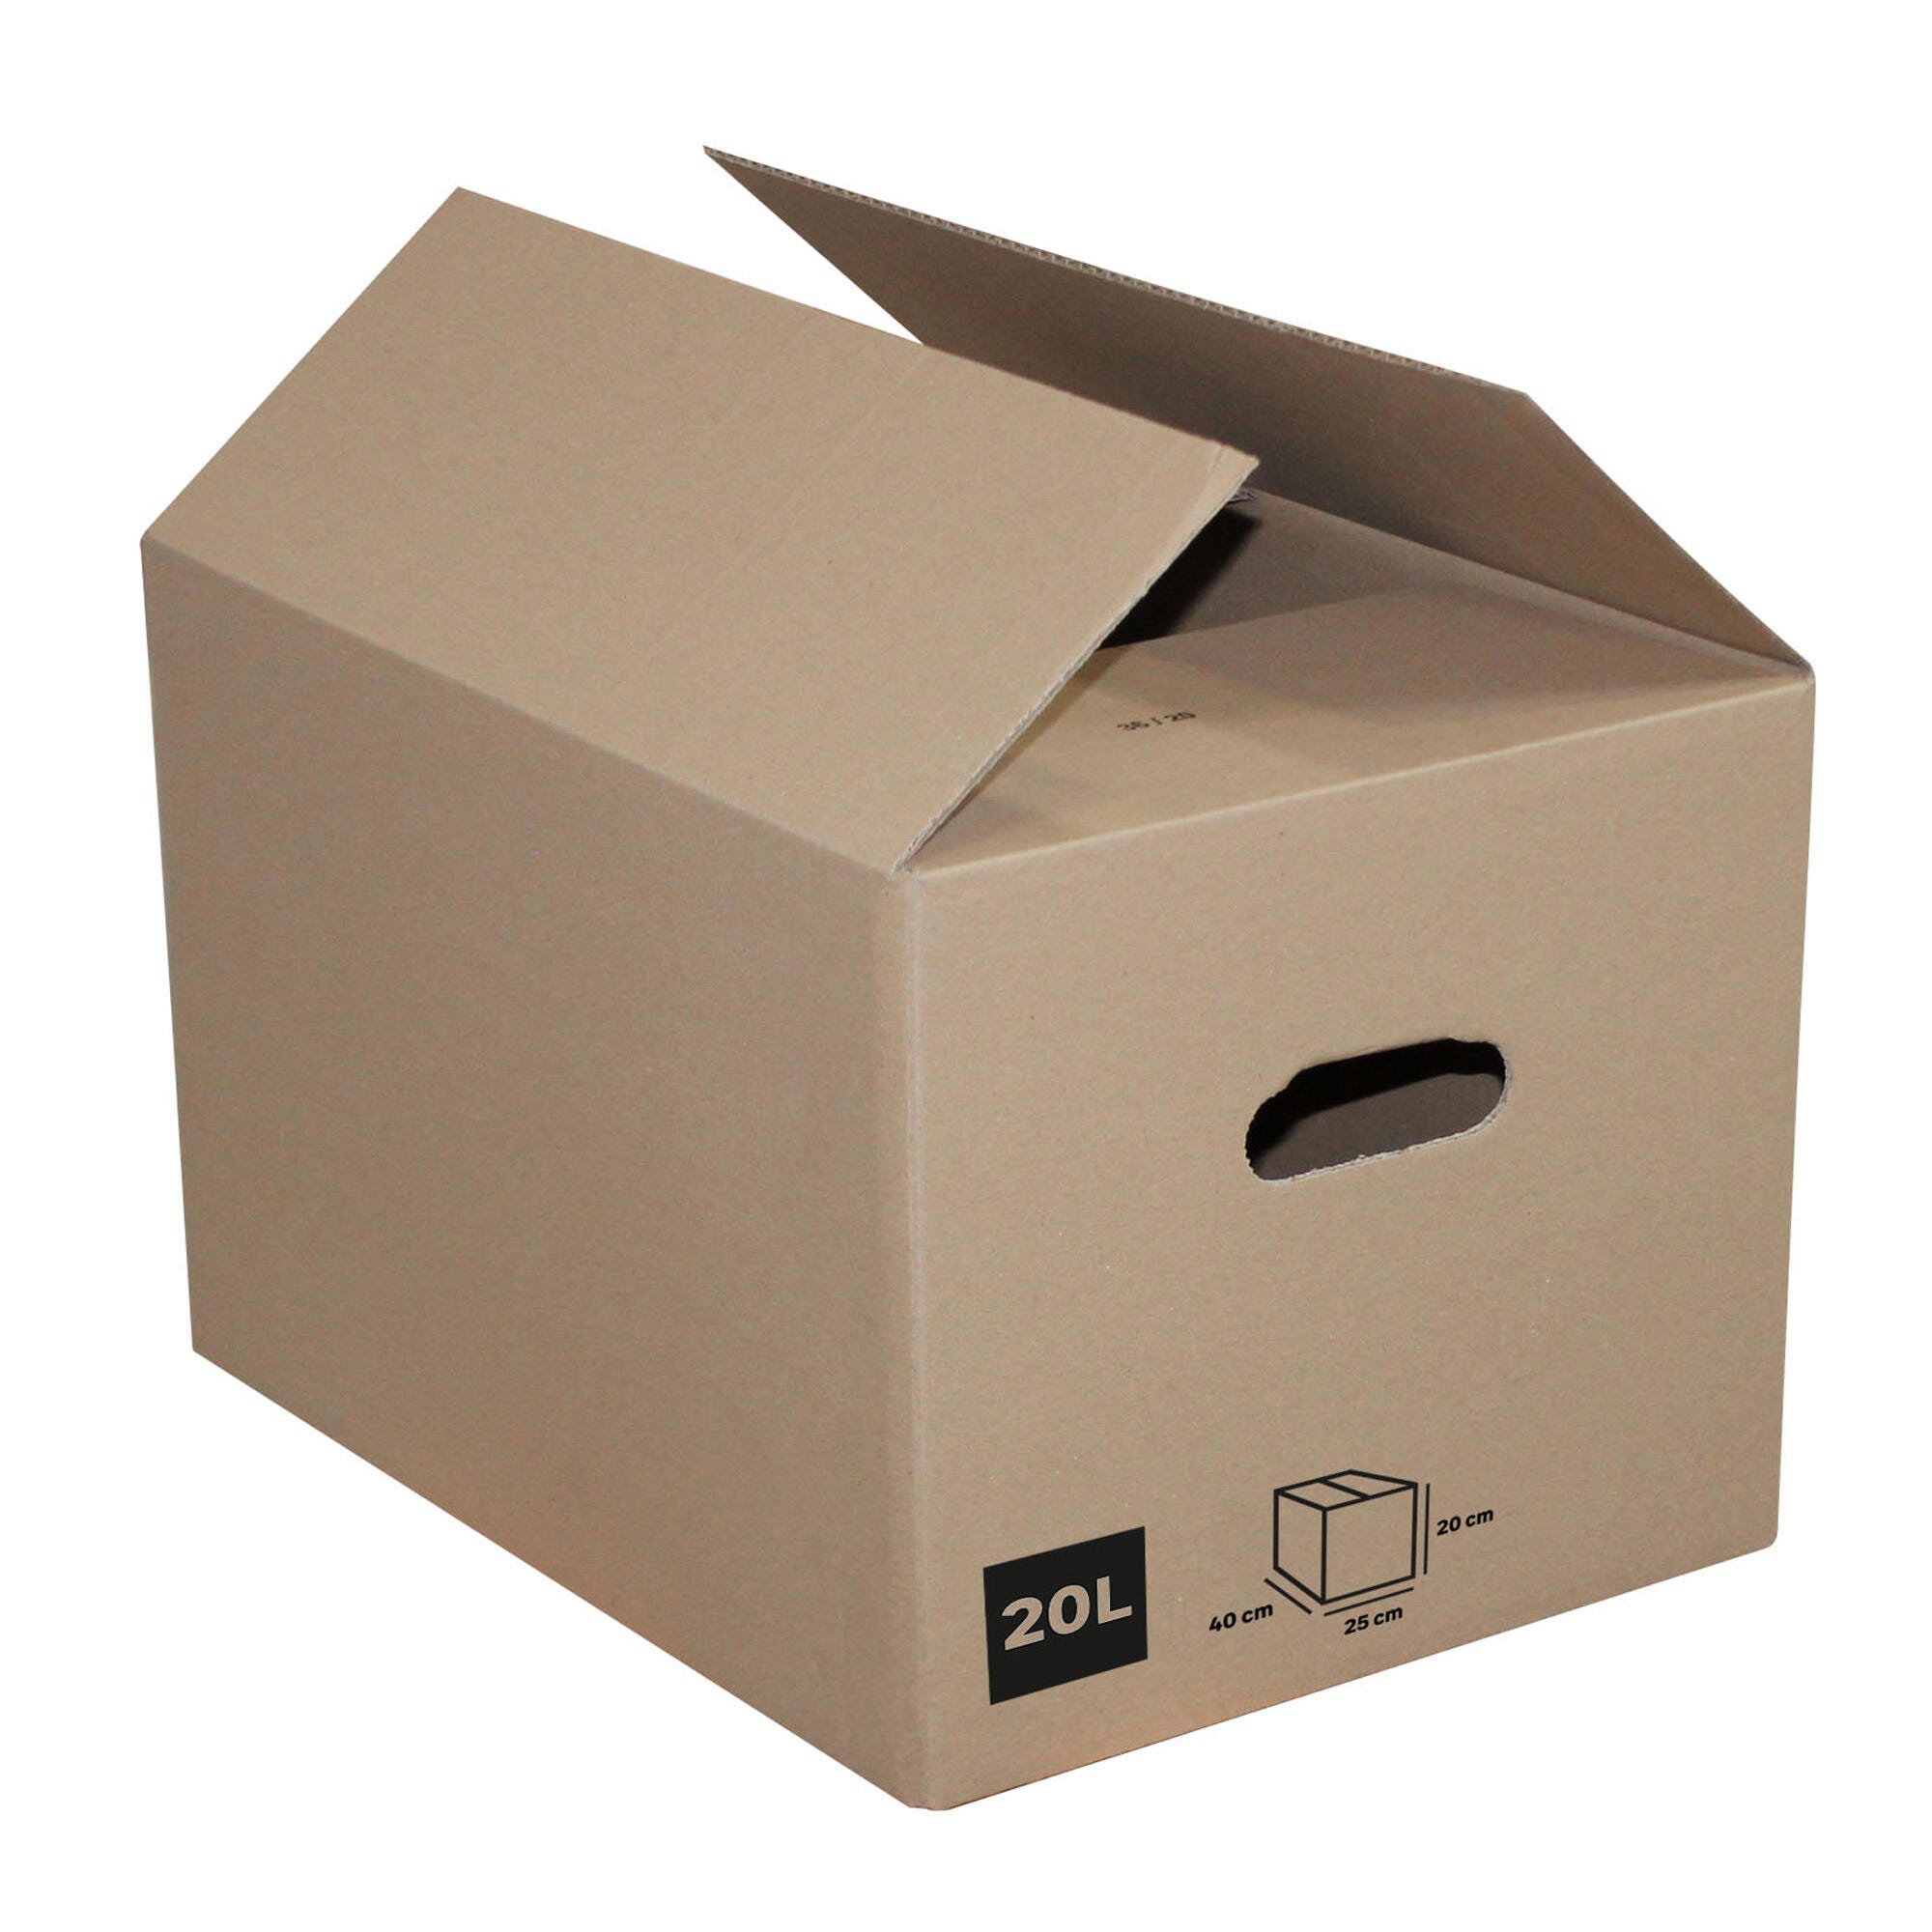 Cajas de Cartón - Caja de Cartón para Envío Postal